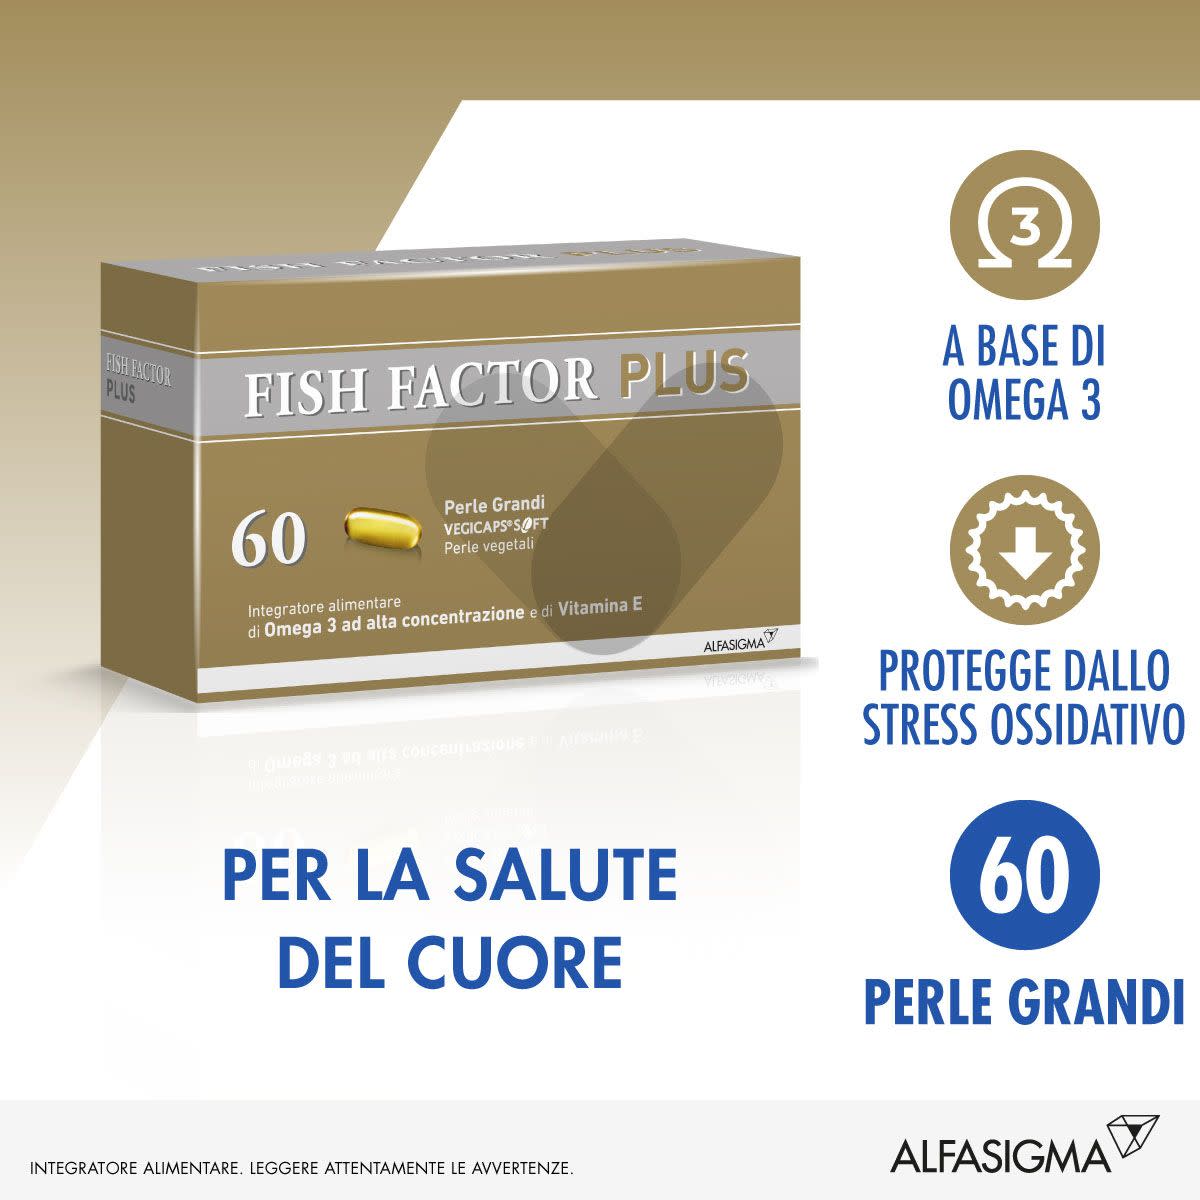 904699725 - Fish Factor Plus 60 Perle Grandi - 7874214_4.jpg